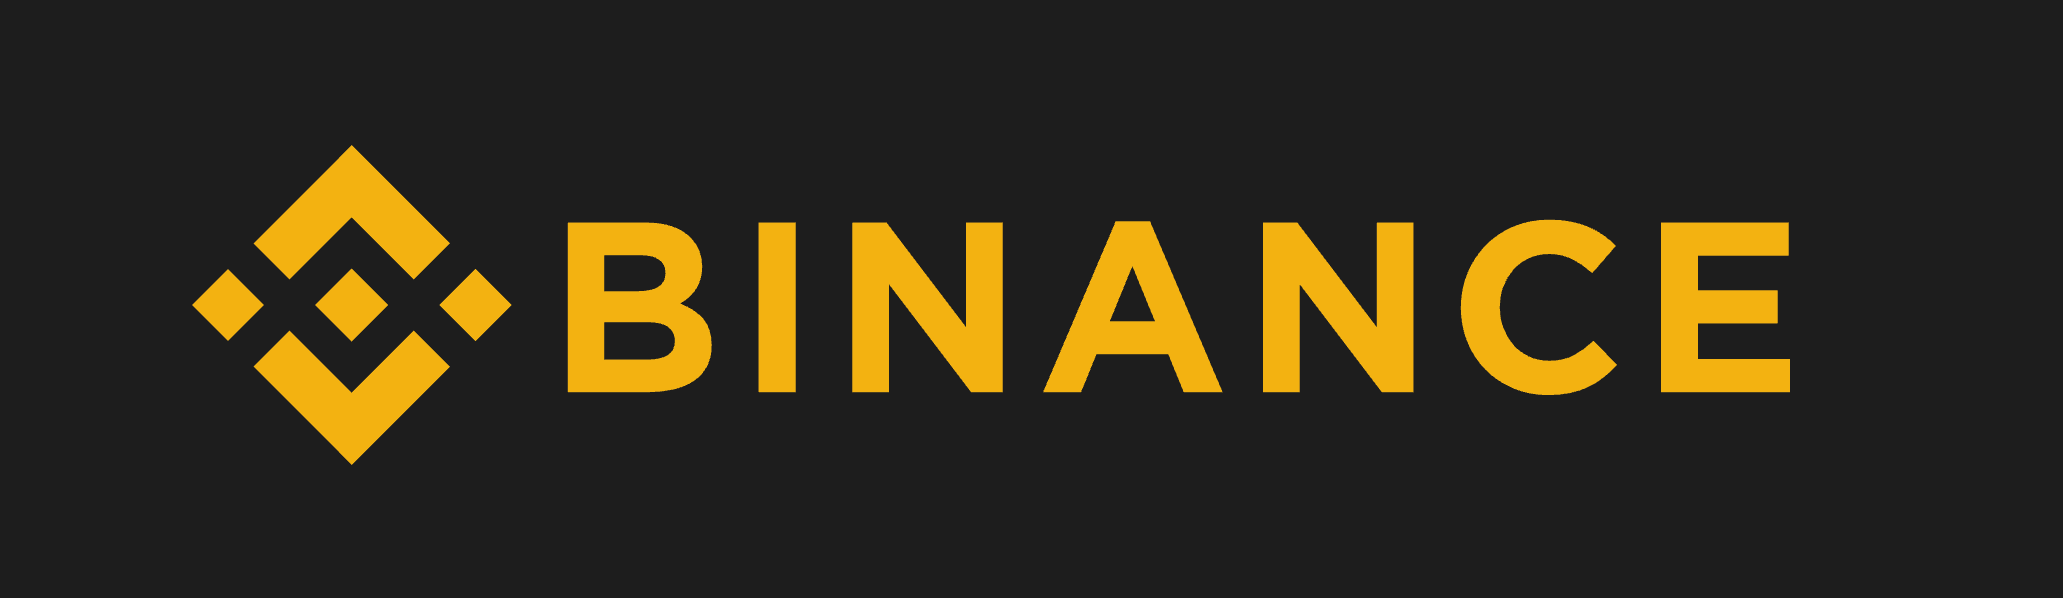 binance（バイナンス）のロゴ画像